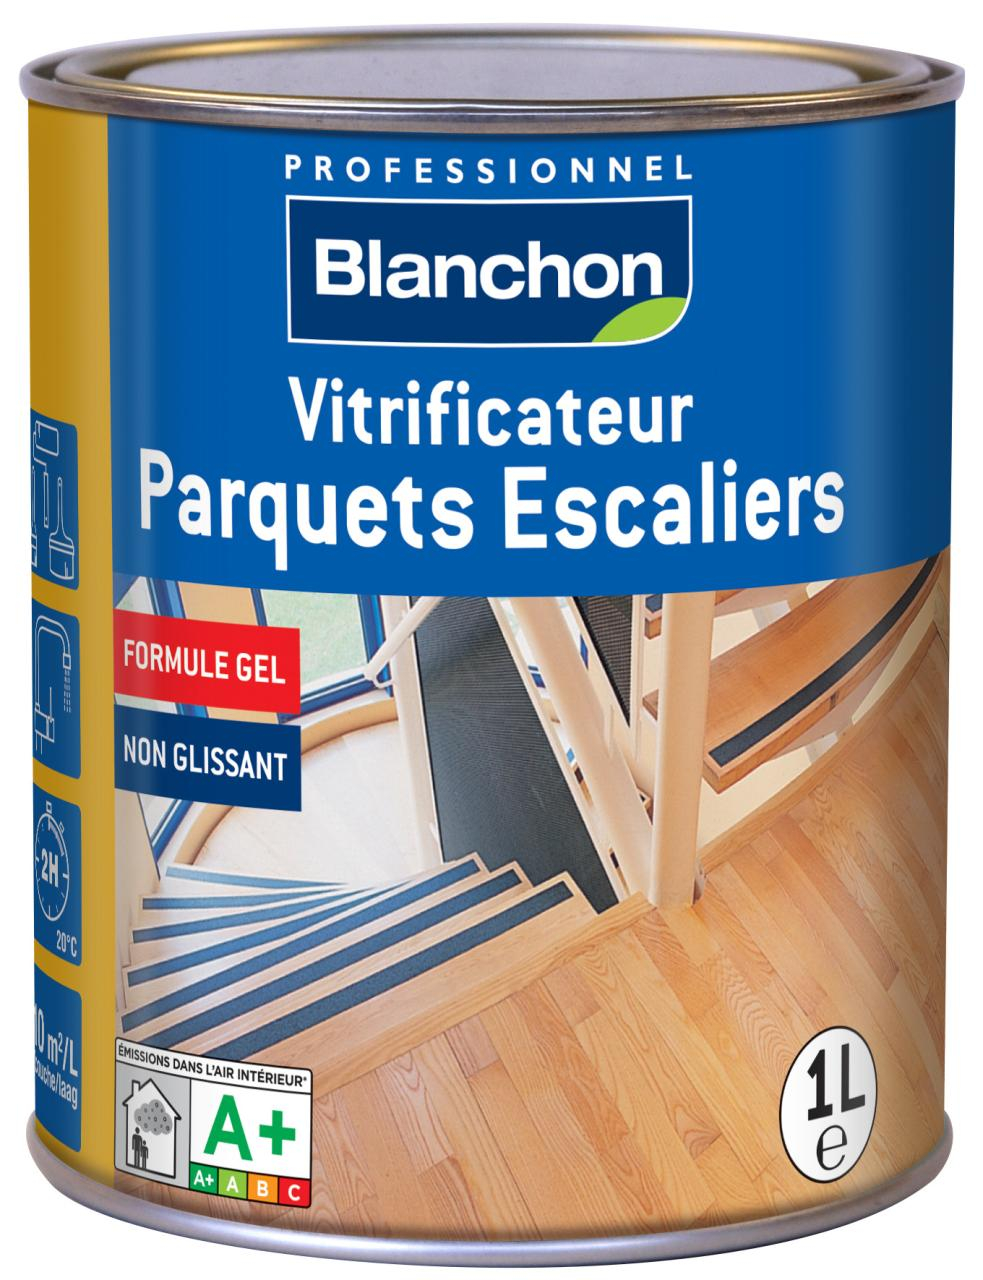 vitrificateur-parquet-escalier-aqua-gel-1l-satine-blanchon-0